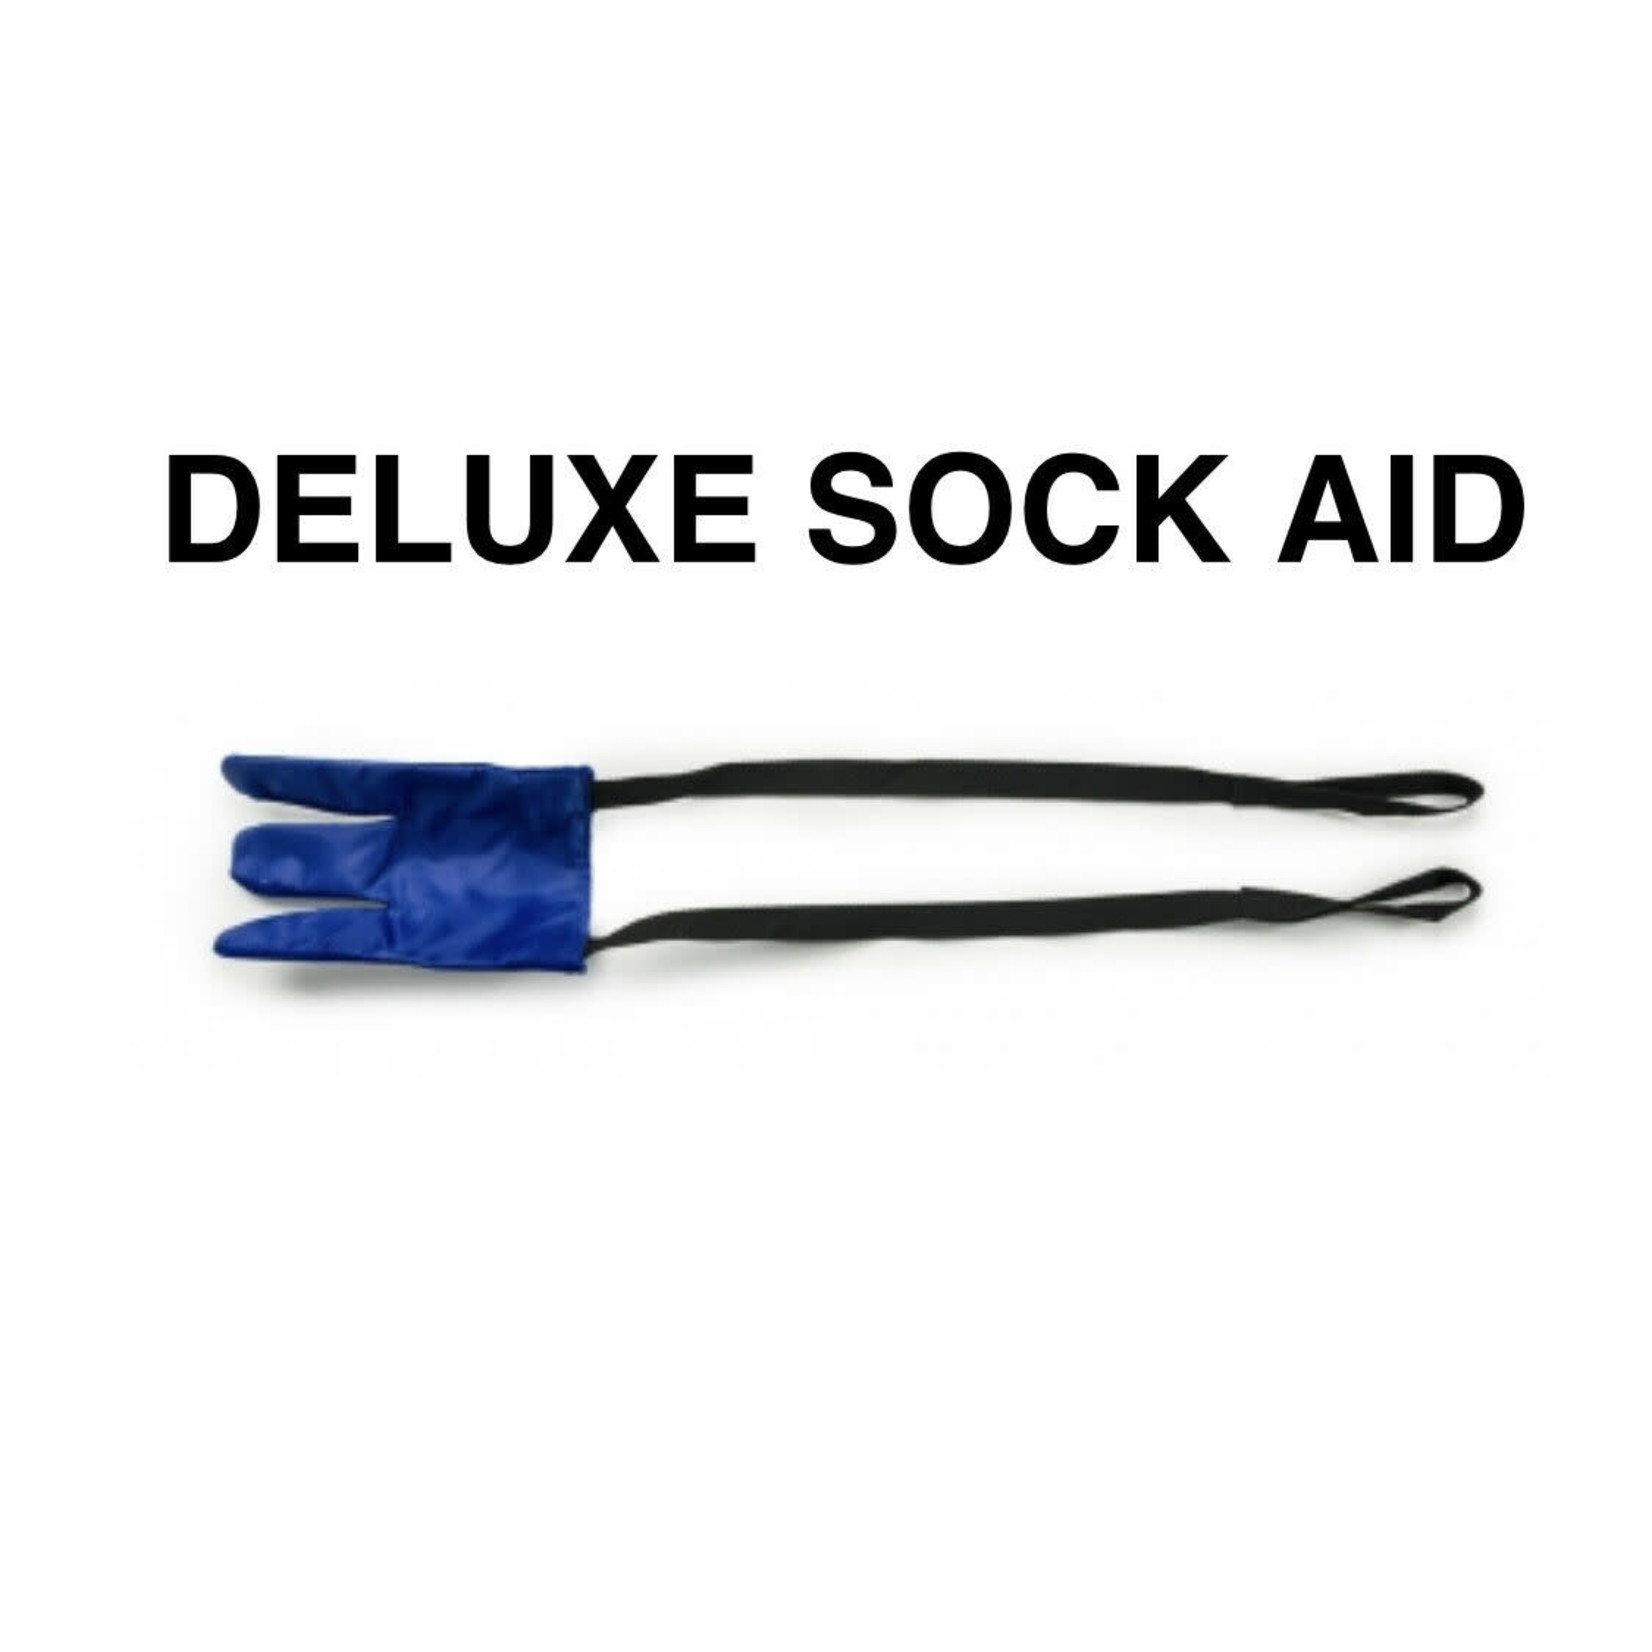 Lumex Deluxe Sock Aid